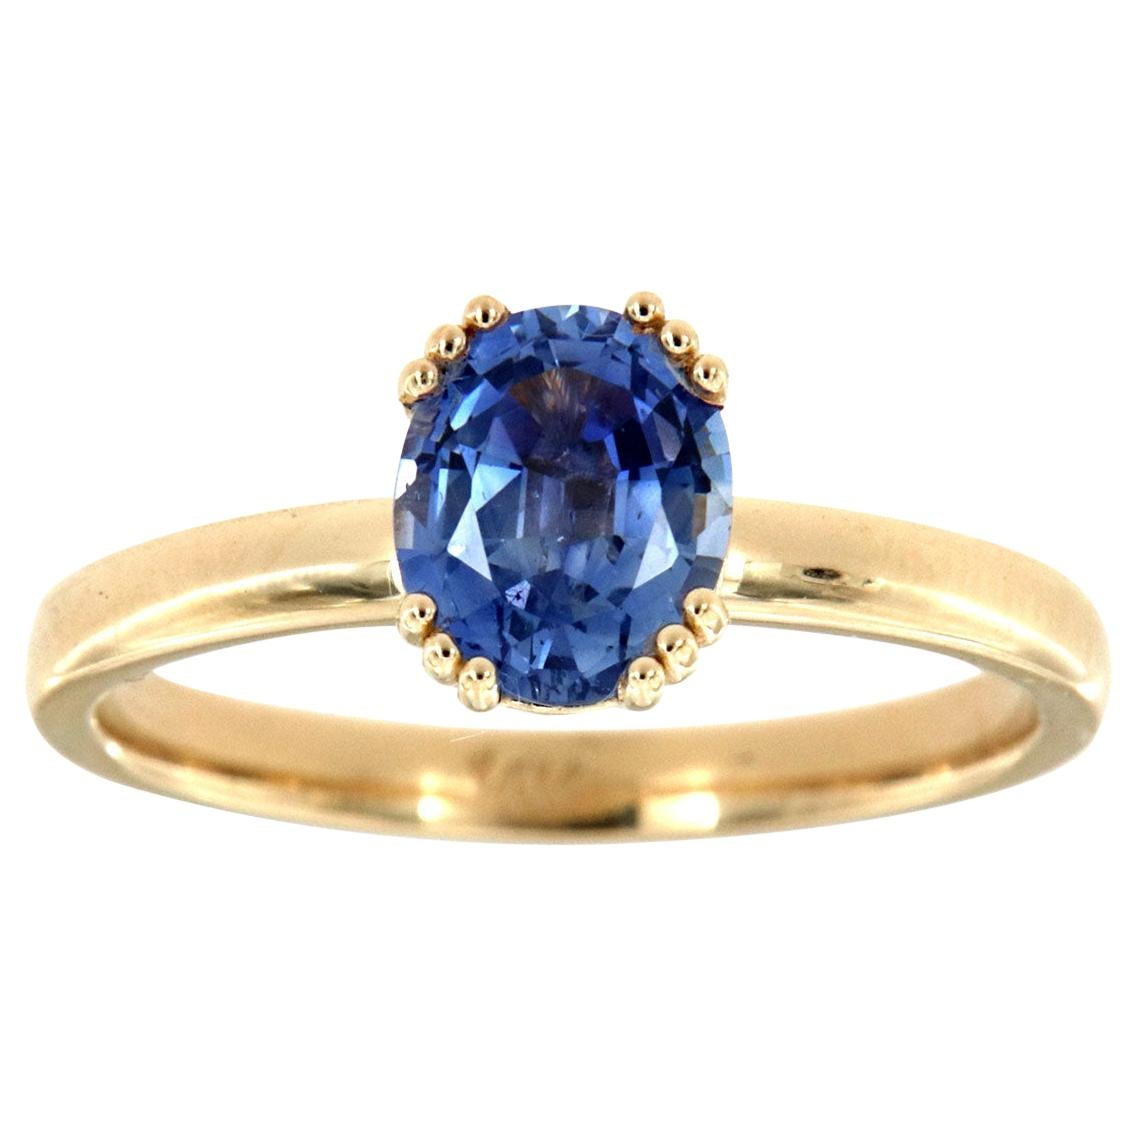 14 Karat Yellow Gold Sari Oval Blue Natural Sapphire Ring Center, 1.48 Carat